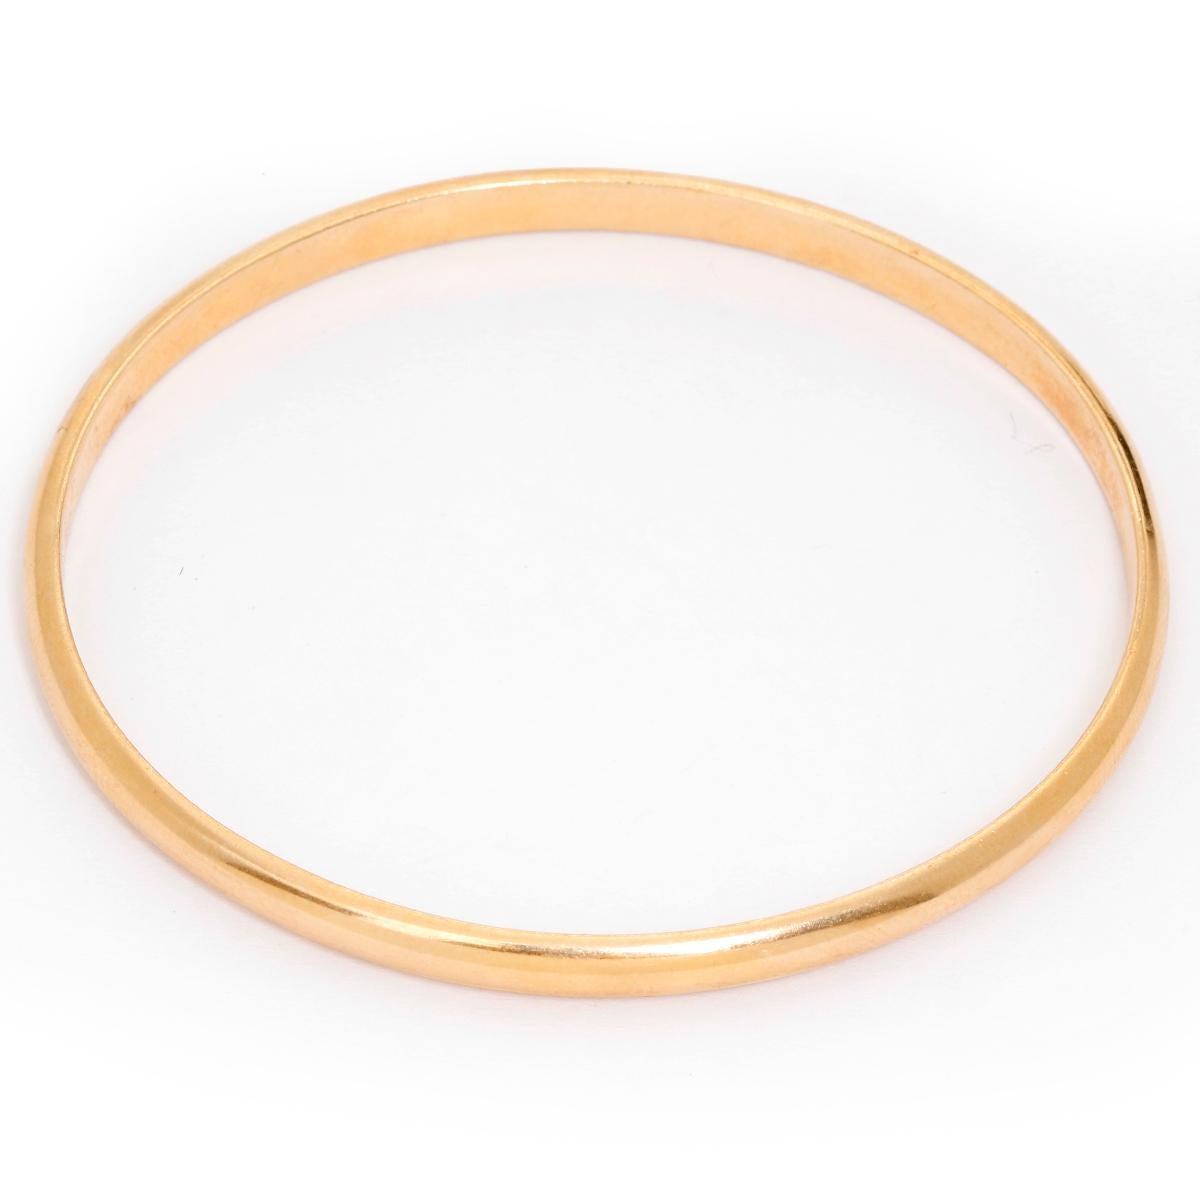 oval gold bangle bracelet